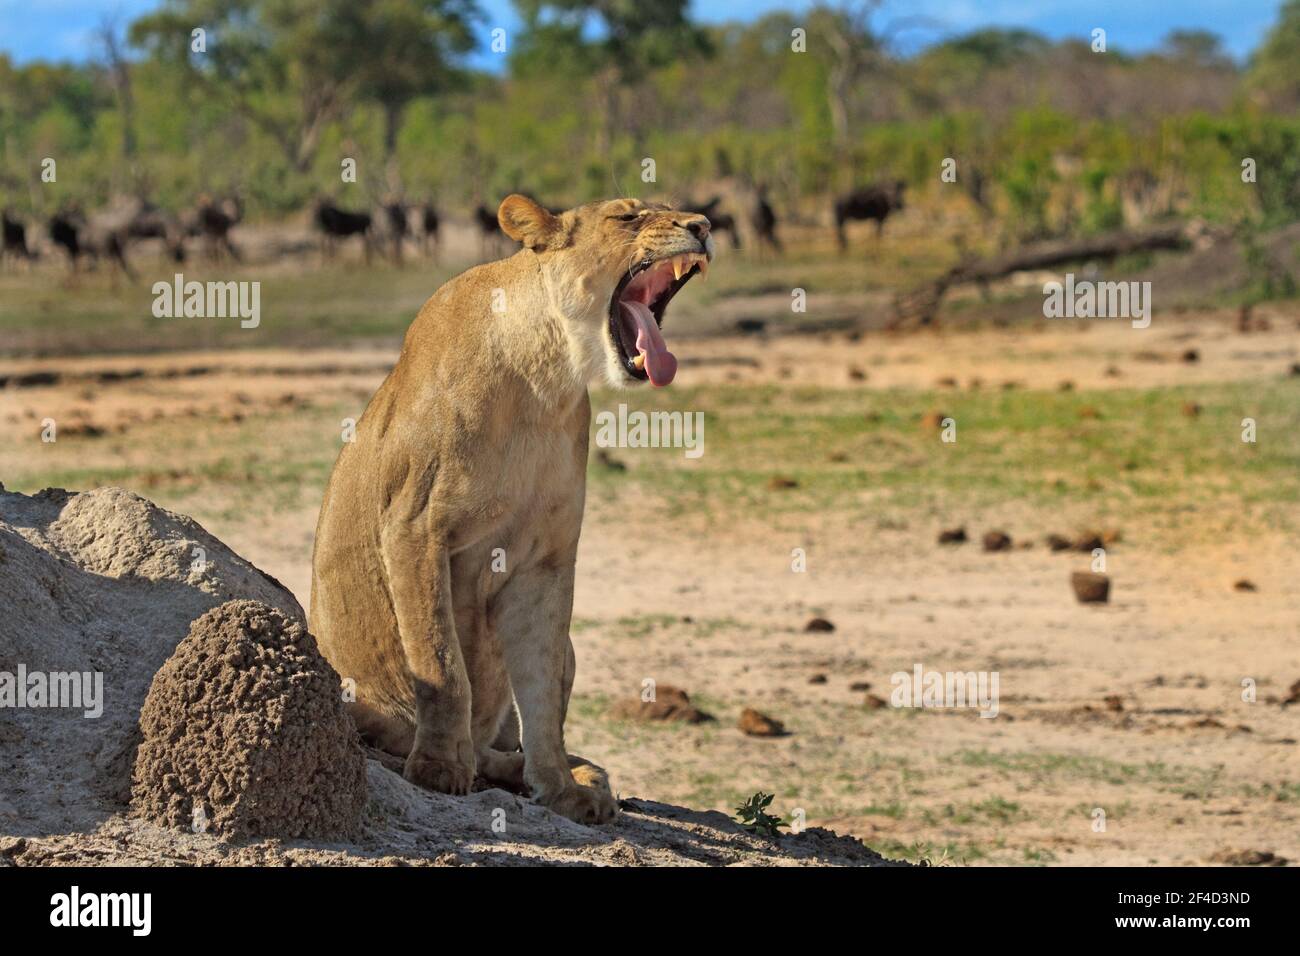 Lionne sur les plaines africaines avec la bouche ouverte bâillonne, sur un fond rempli de jeu Banque D'Images